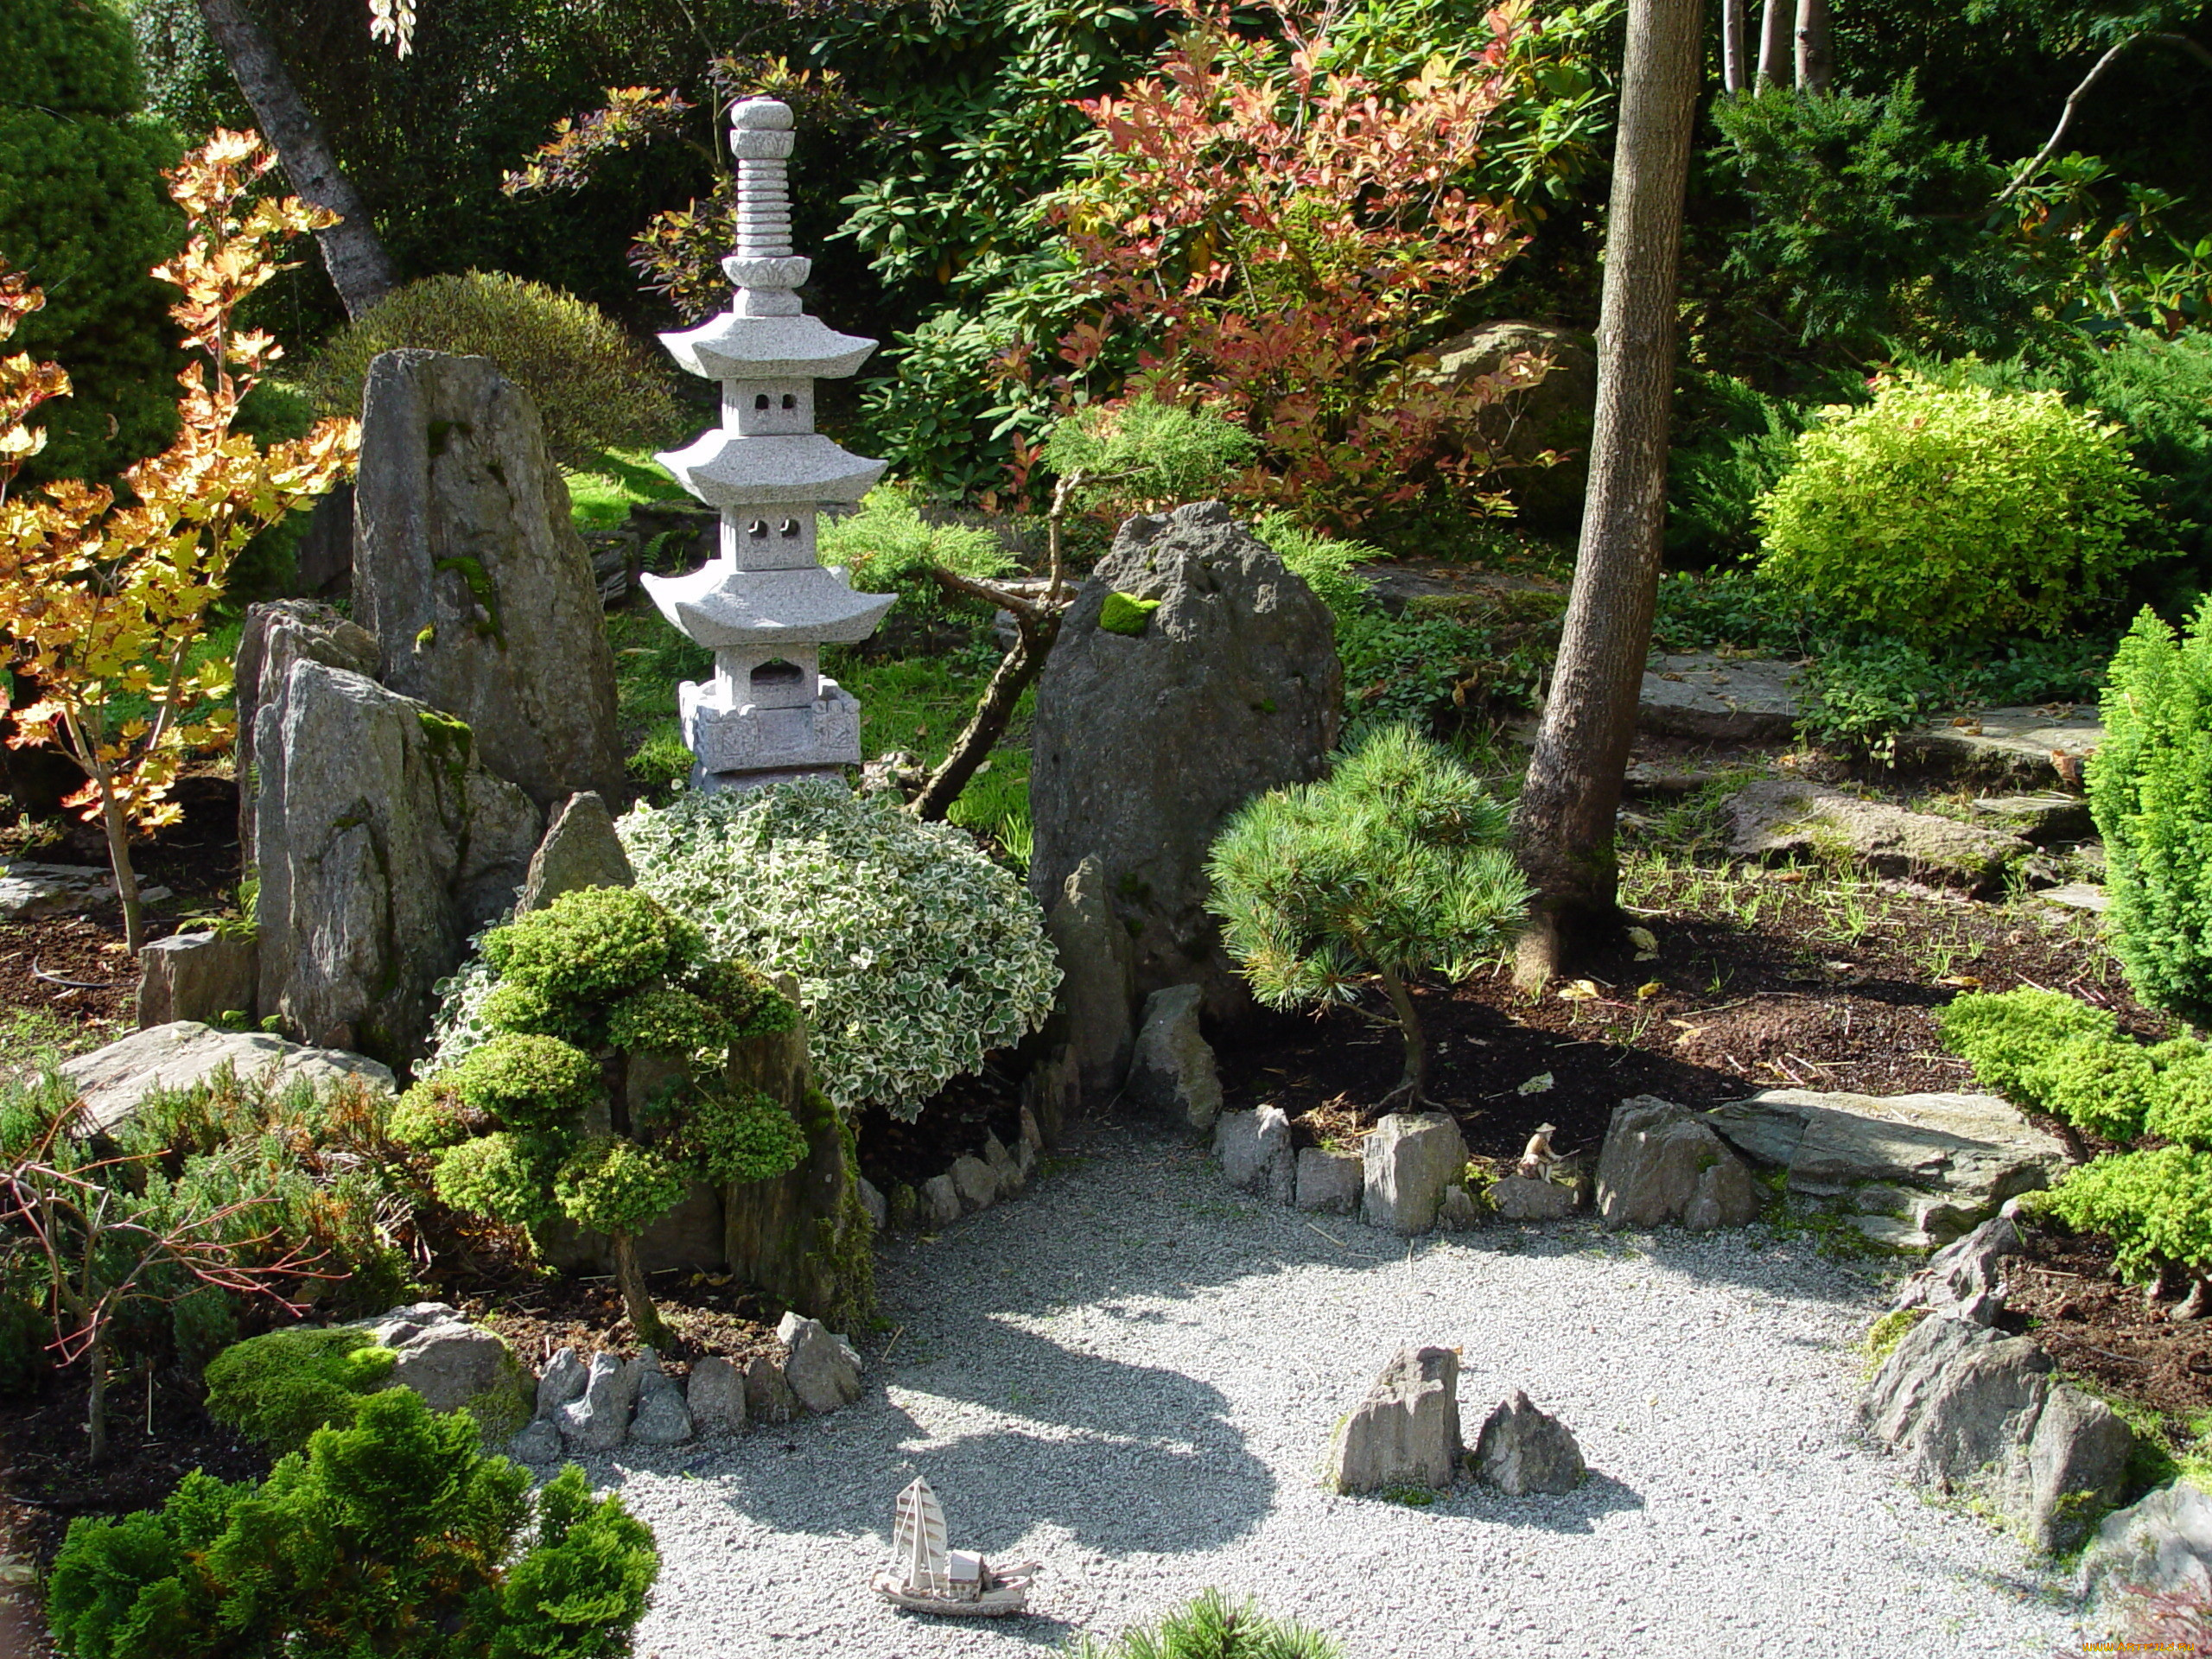 Забронировать столик в японском саду. Рокарий сад бонсай Южная Корея. Японский Каменистый сад. Парк камней сад камней Япония. Японский Каменистый сад в ландшафтном дизайне.